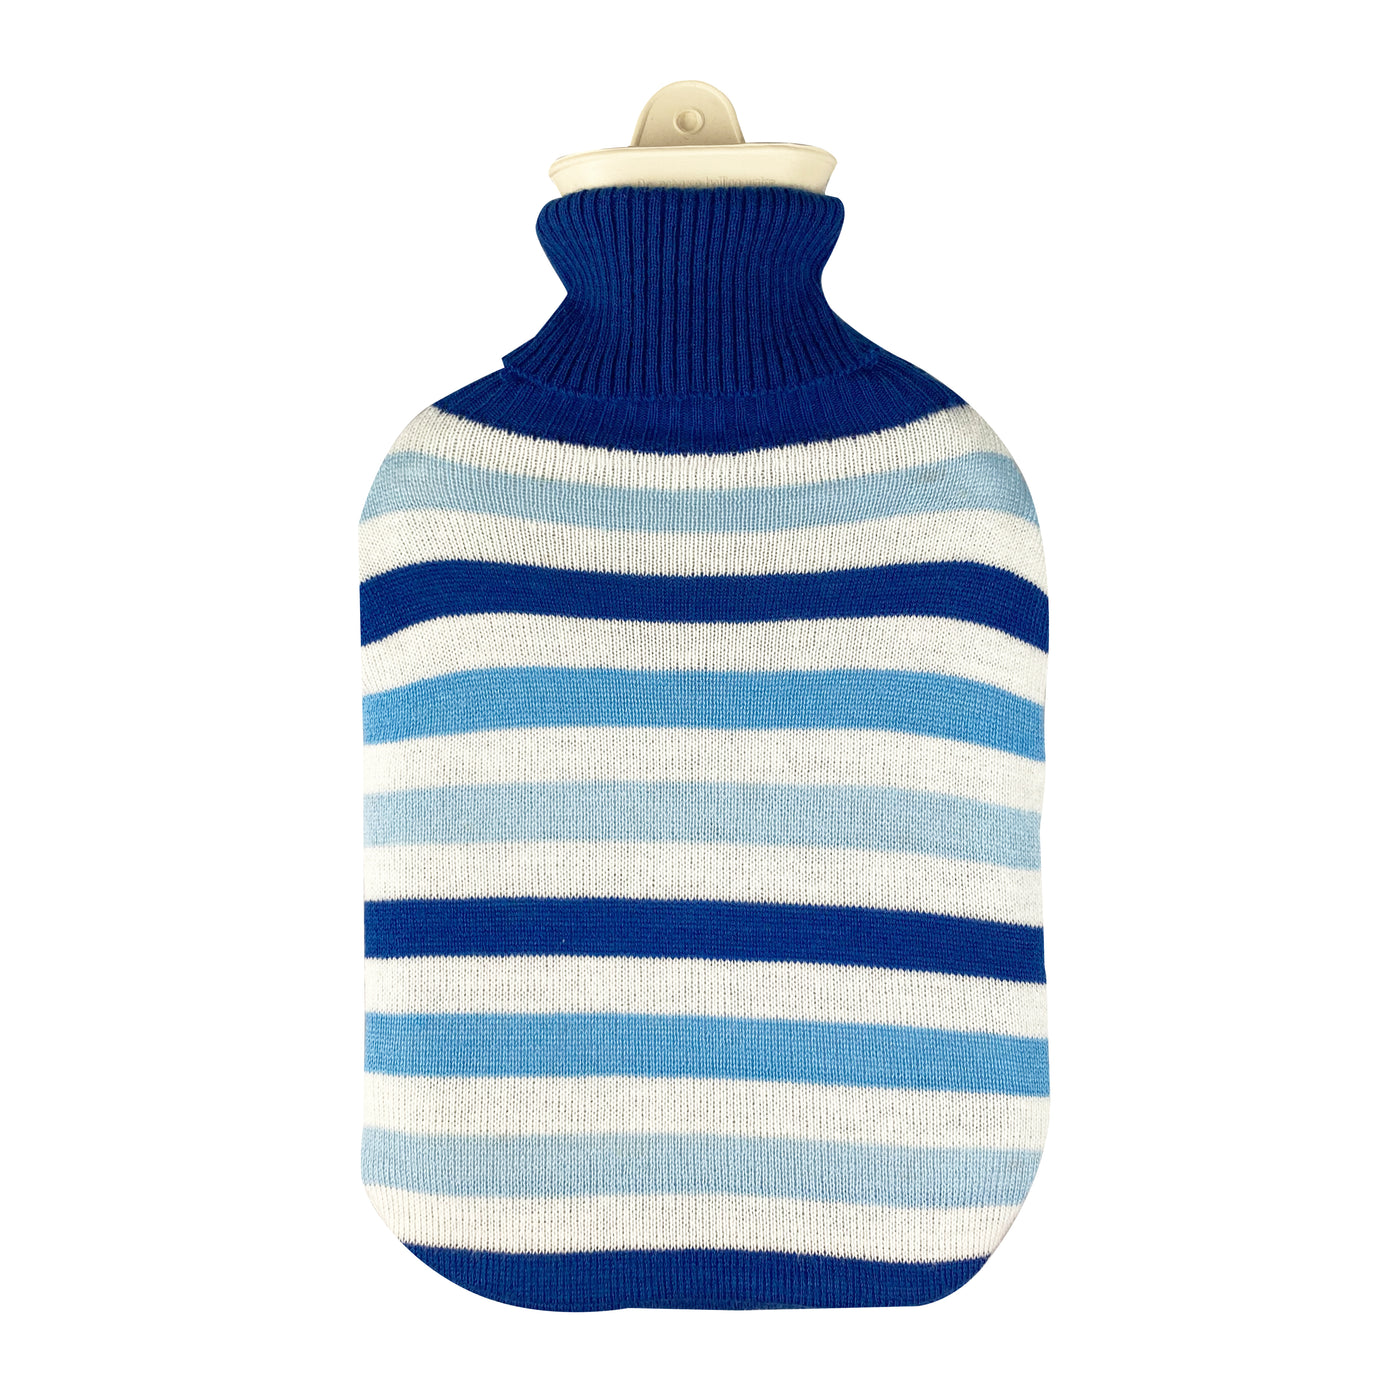 Hot Water Bottle & Cover - Blue Stripe Knit